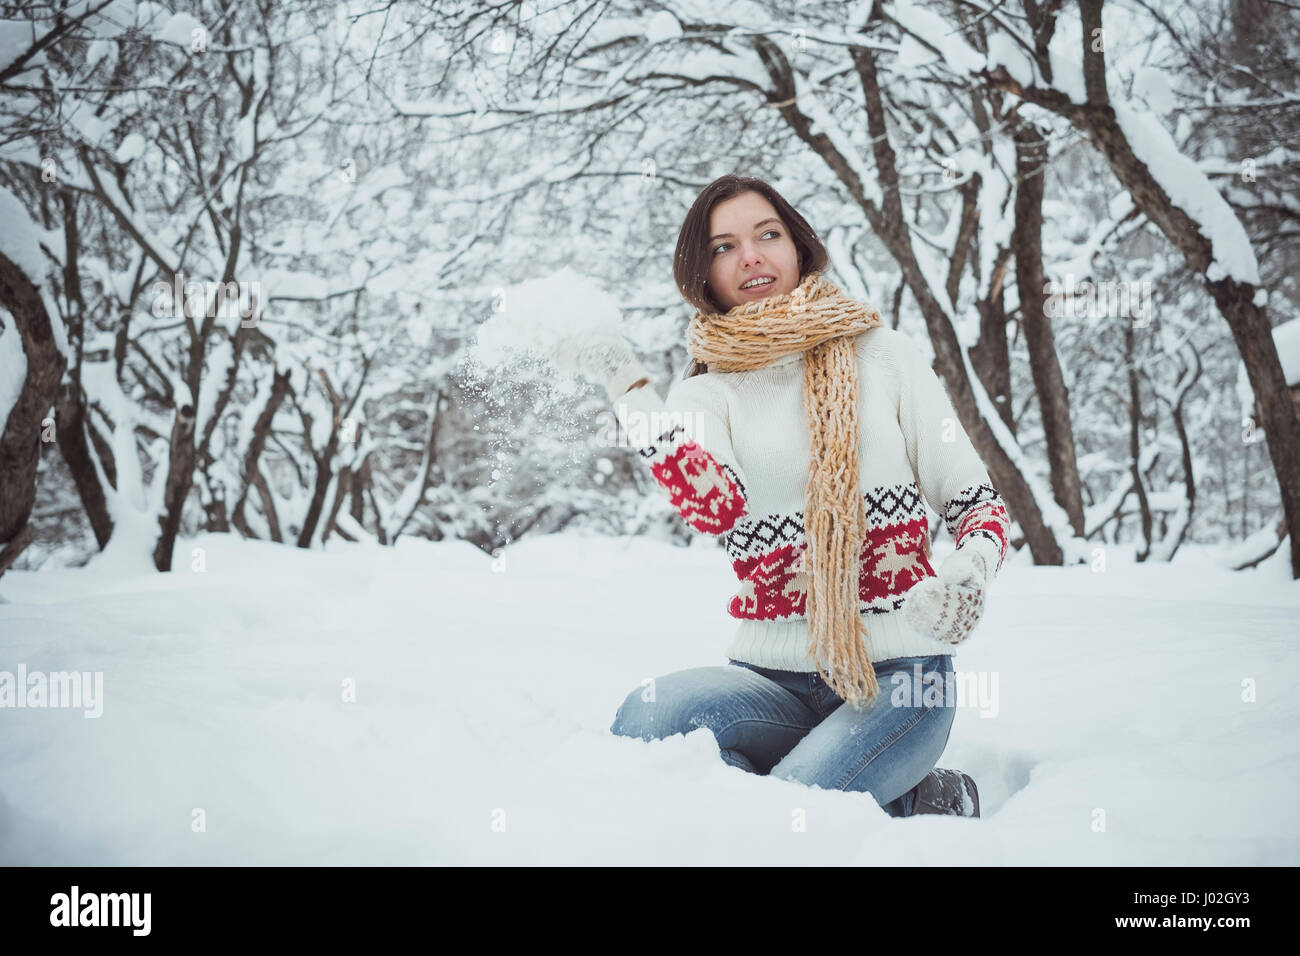 Das Mädchen sitzt auf einer Runde im Schnee und wirft jemand einen Schneeball Stockfoto